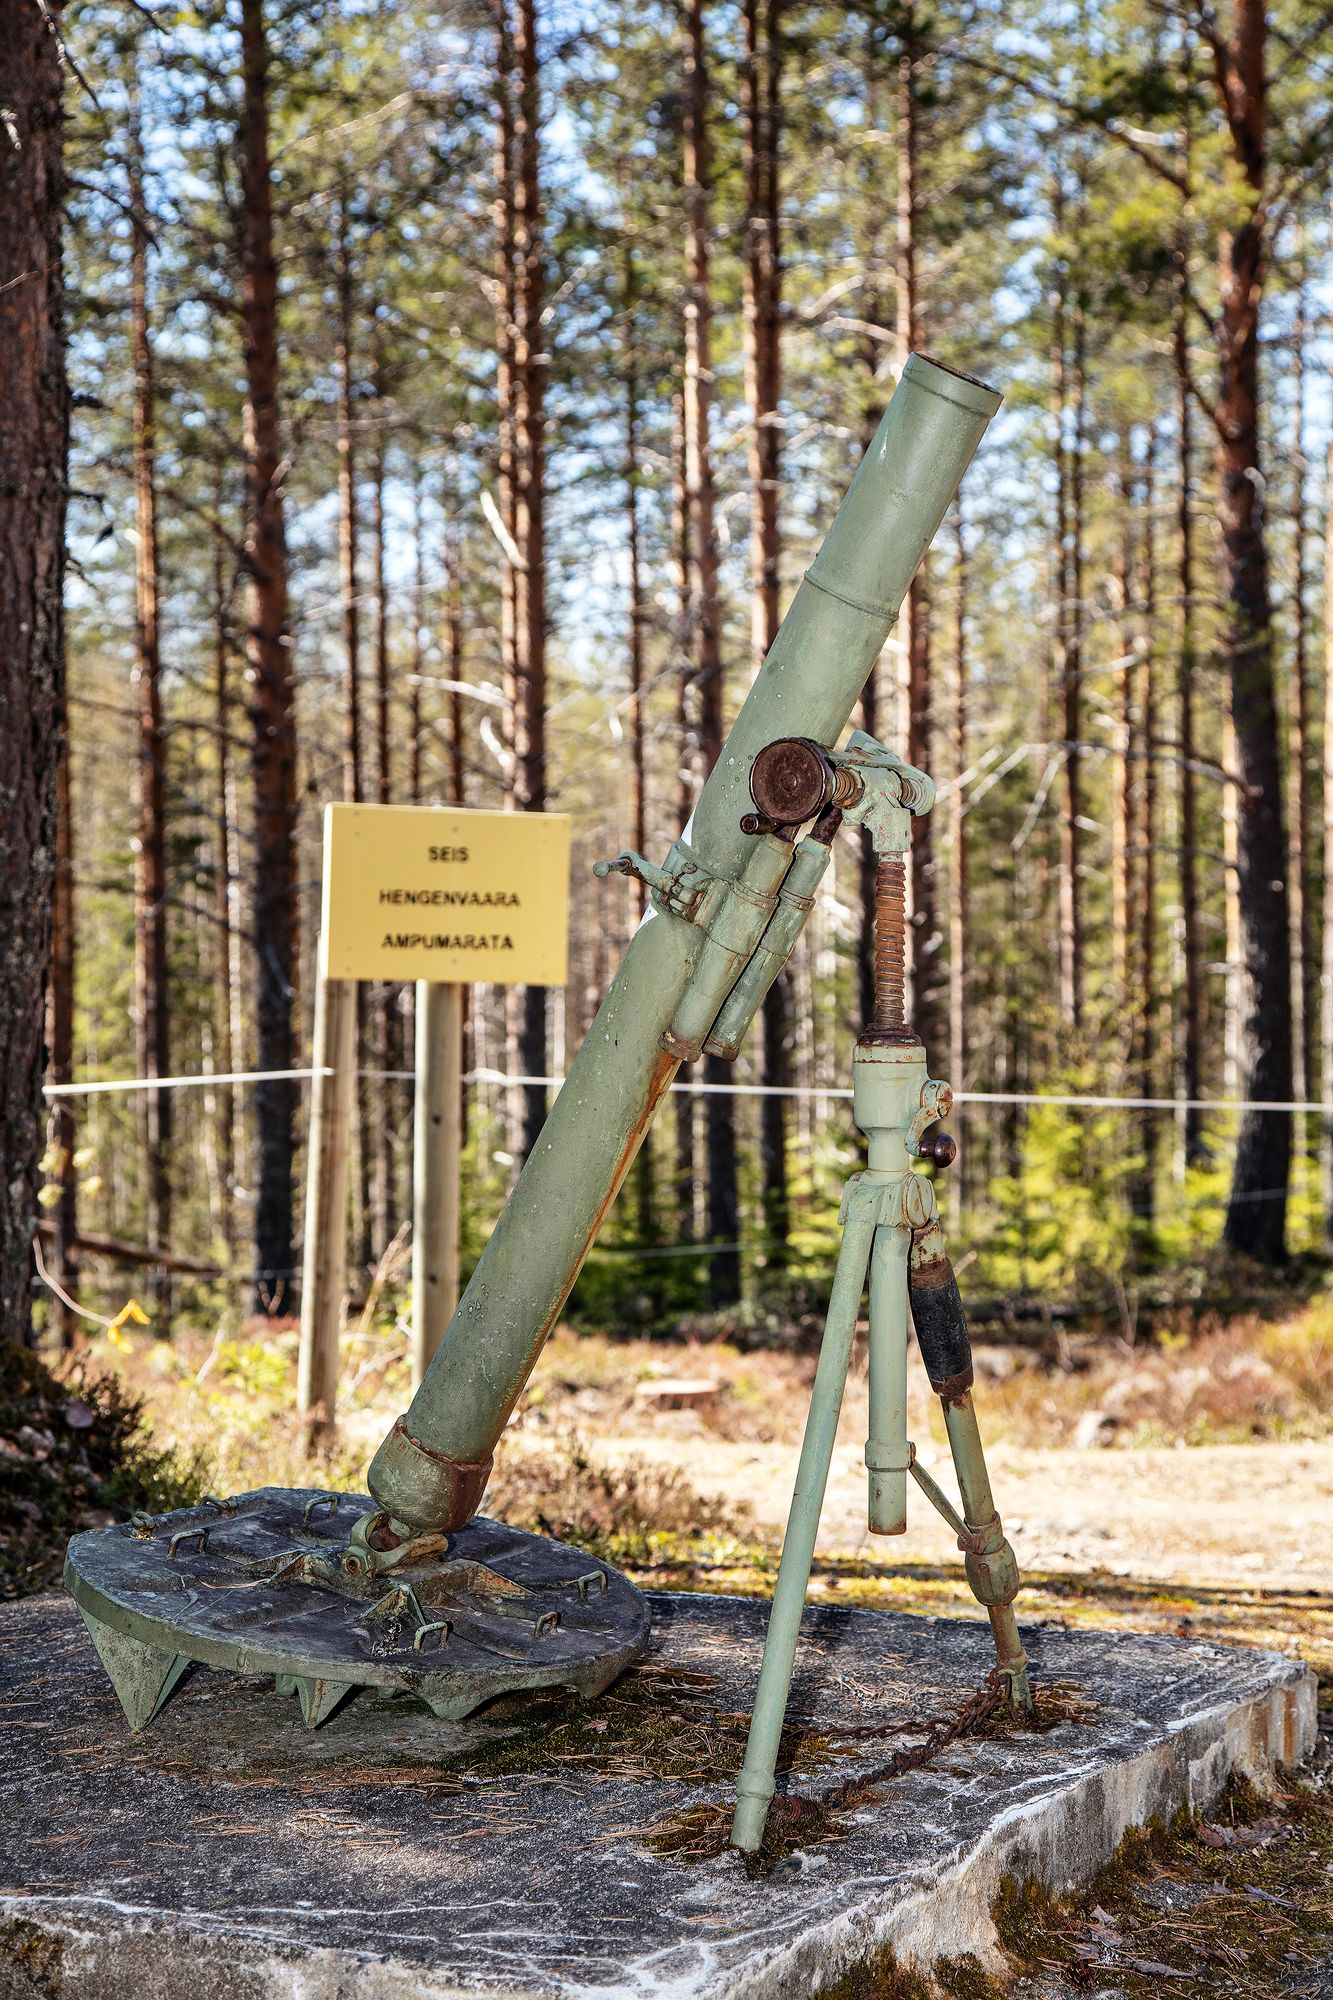 Sikrenvaarassa on esillä sota­saaliina saatu vihollisen 45 mm:n panssarintorjuntatykki. Vieressä on nykyään ampumarata. © Harri Mäenpää